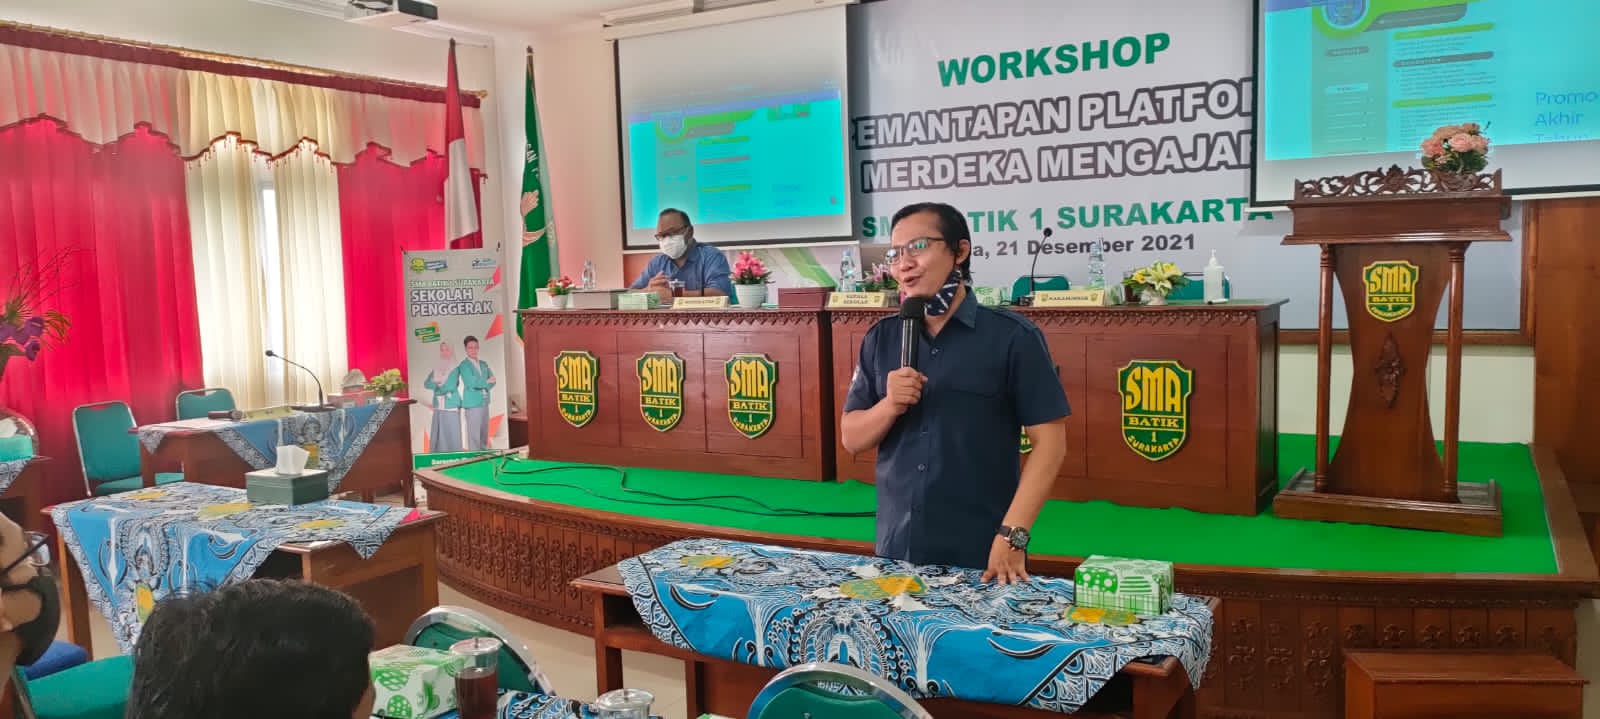 Workshop Pemantapan Patform Merdeka Belajar di SMA Batik 1 Surakarta